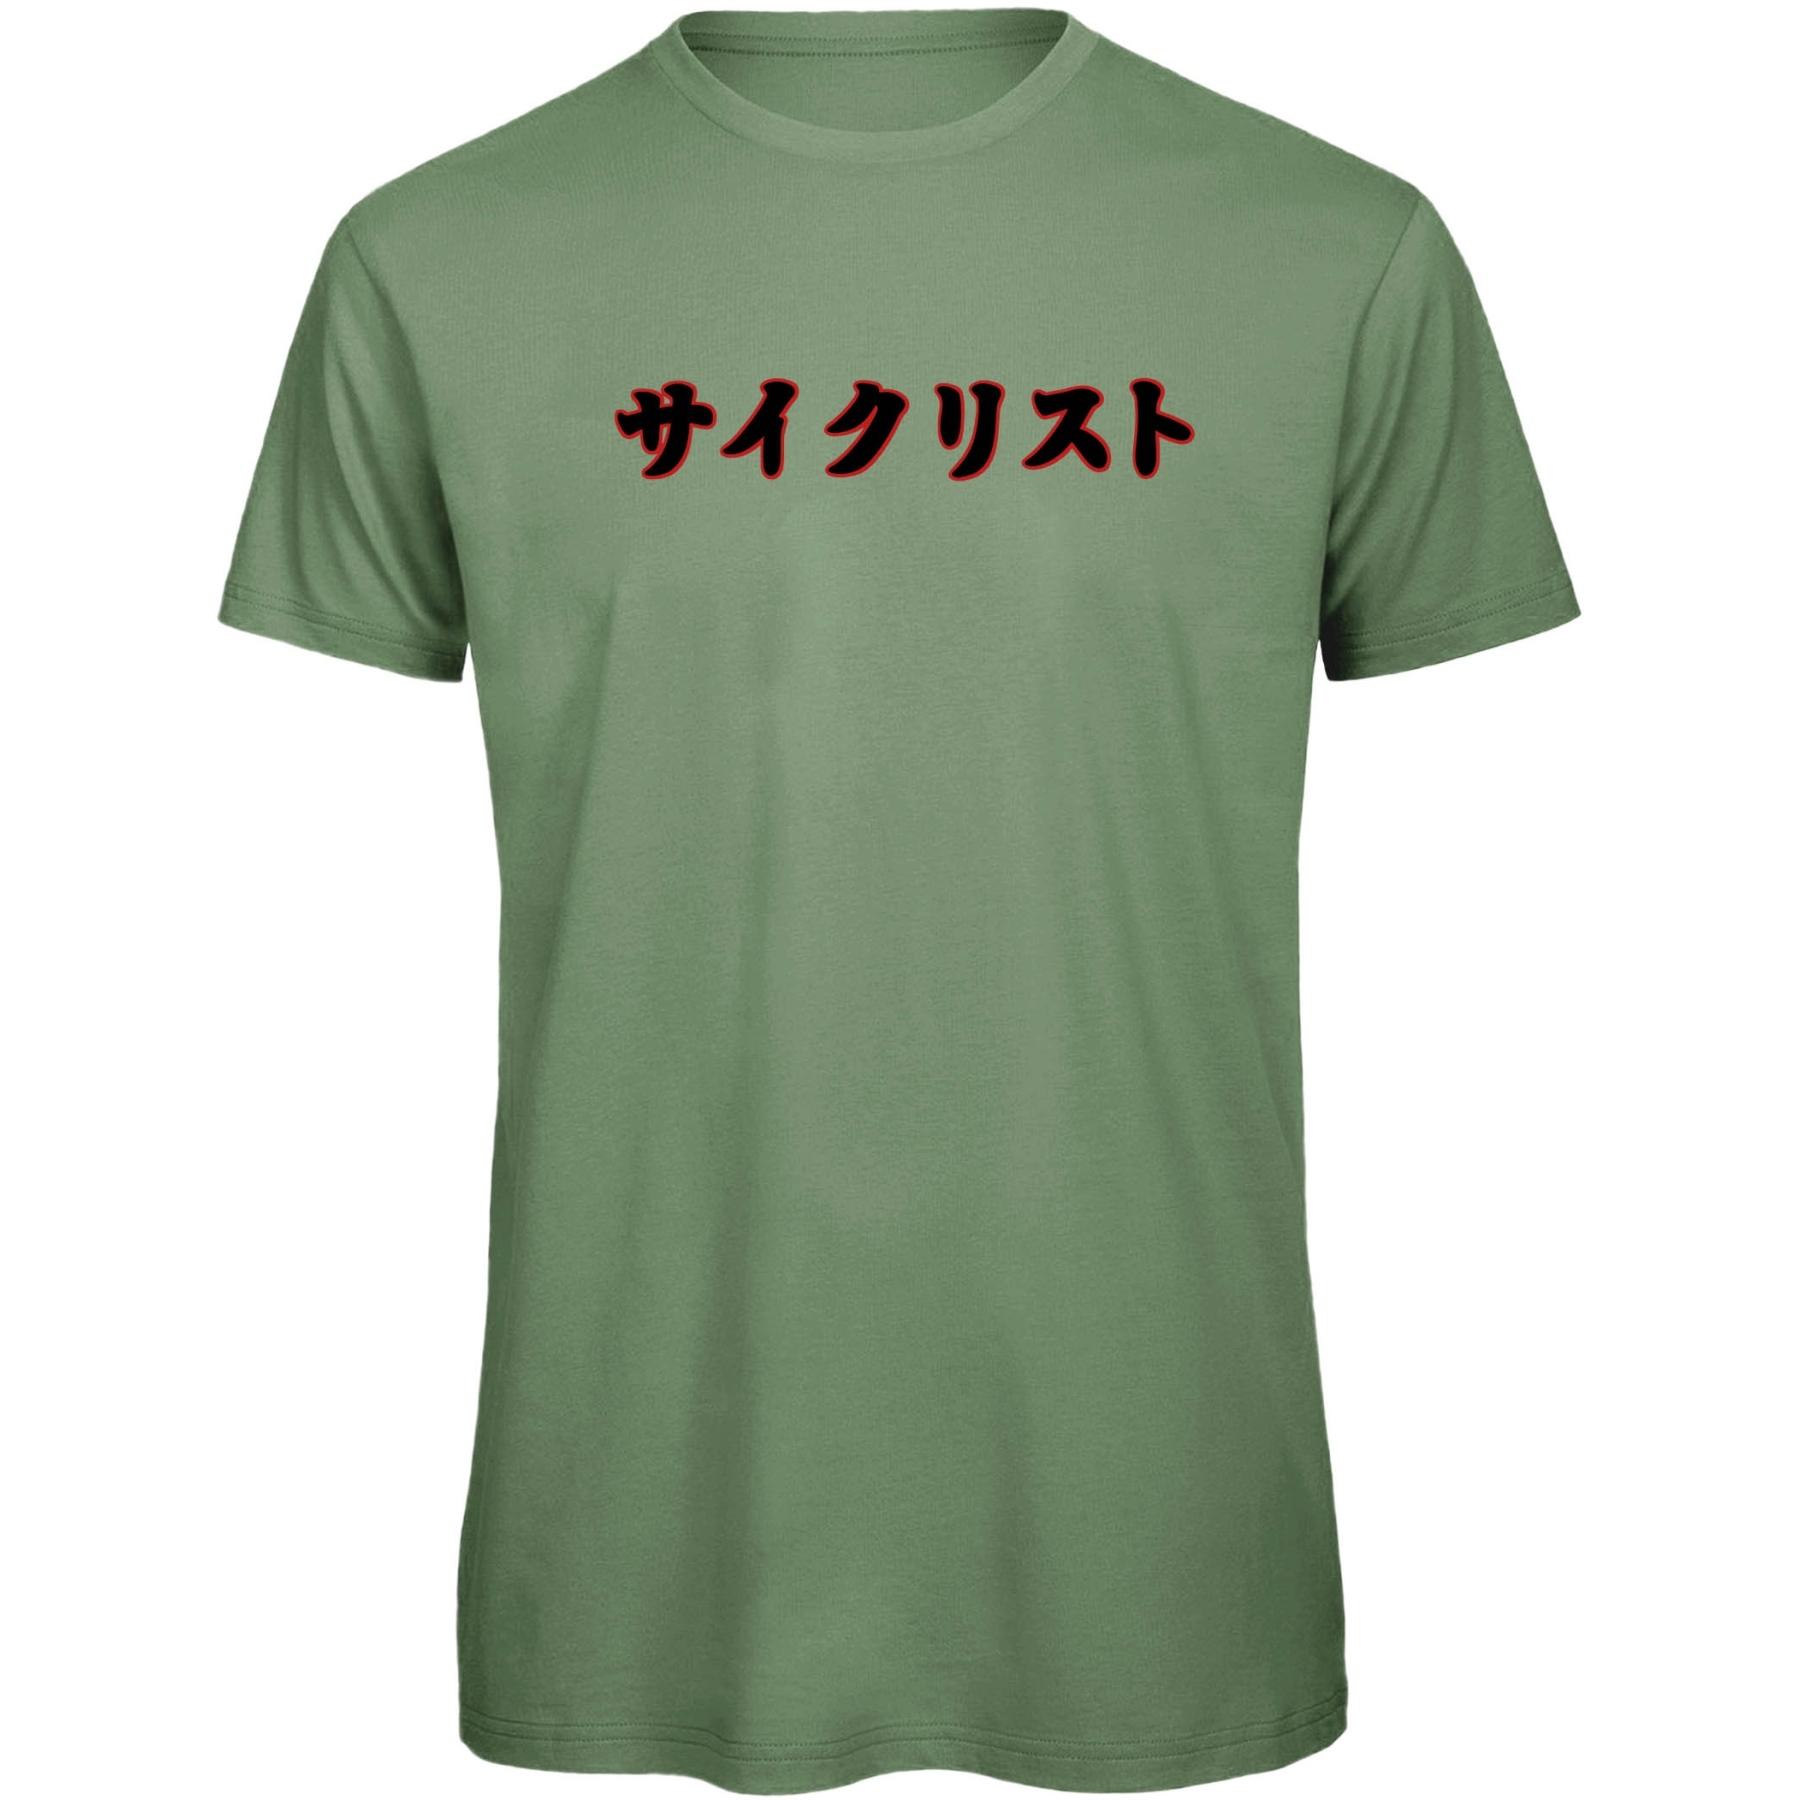 Produktbild von RTTshirts Fahrrad T-Shirt Saikurisuto - hellgrün